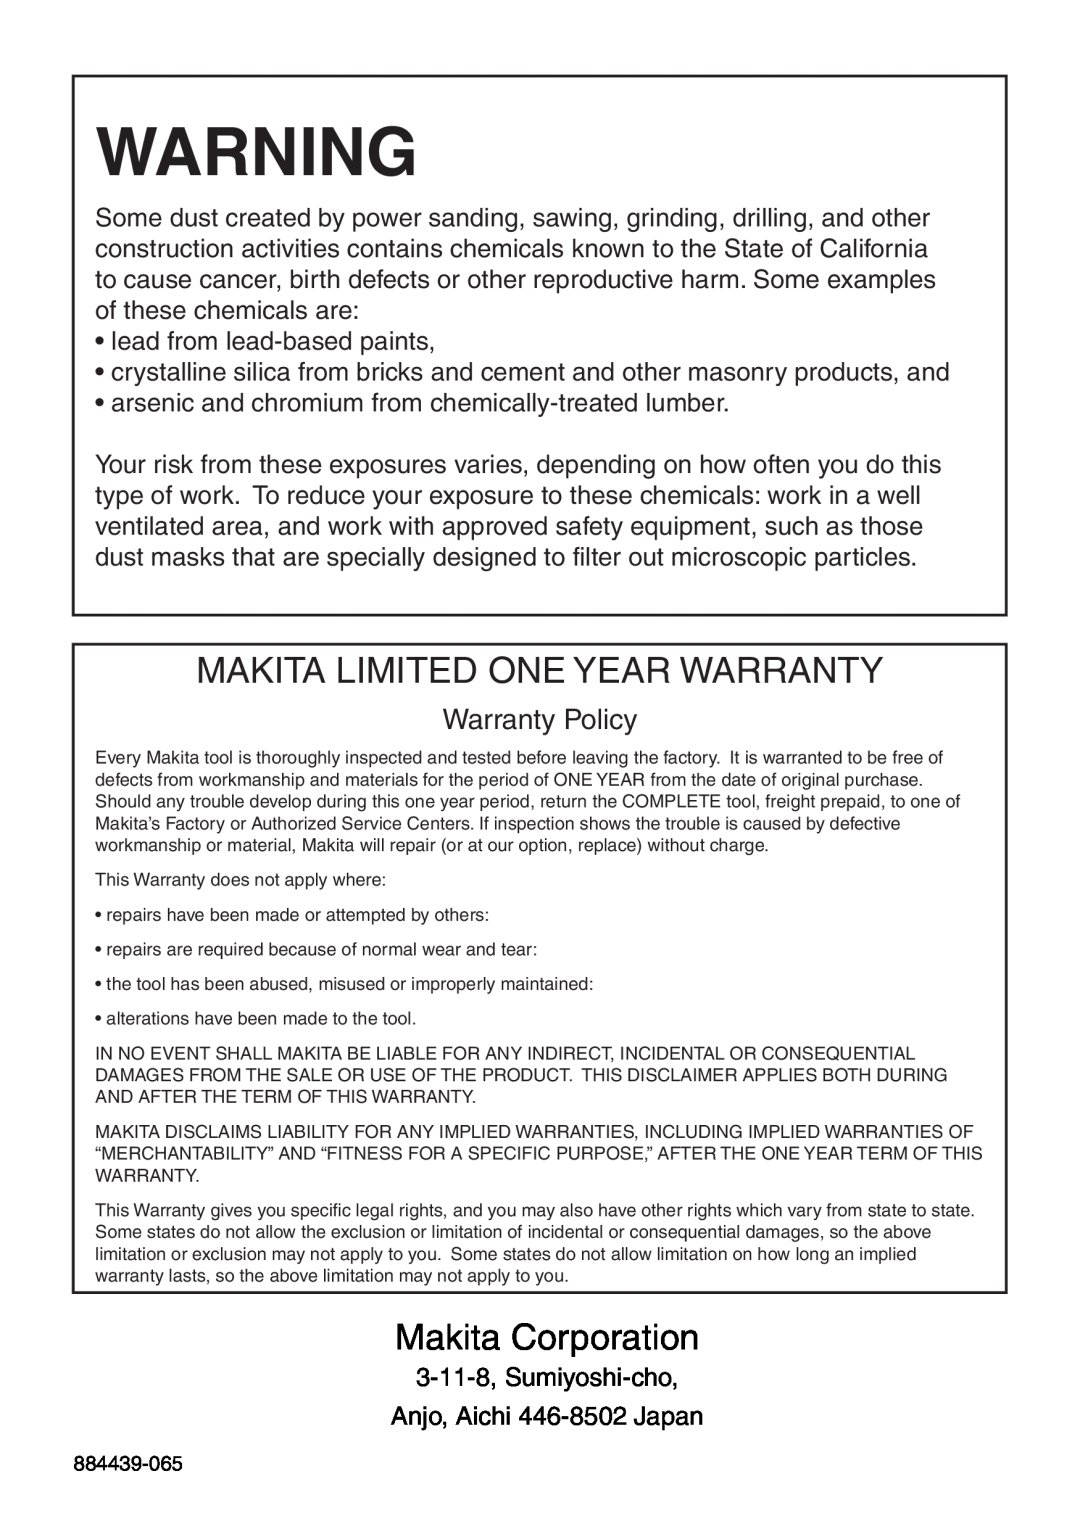 Makita 9566CV instruction manual Makita Limited One Year Warranty, Makita Corporation, Warranty Policy 